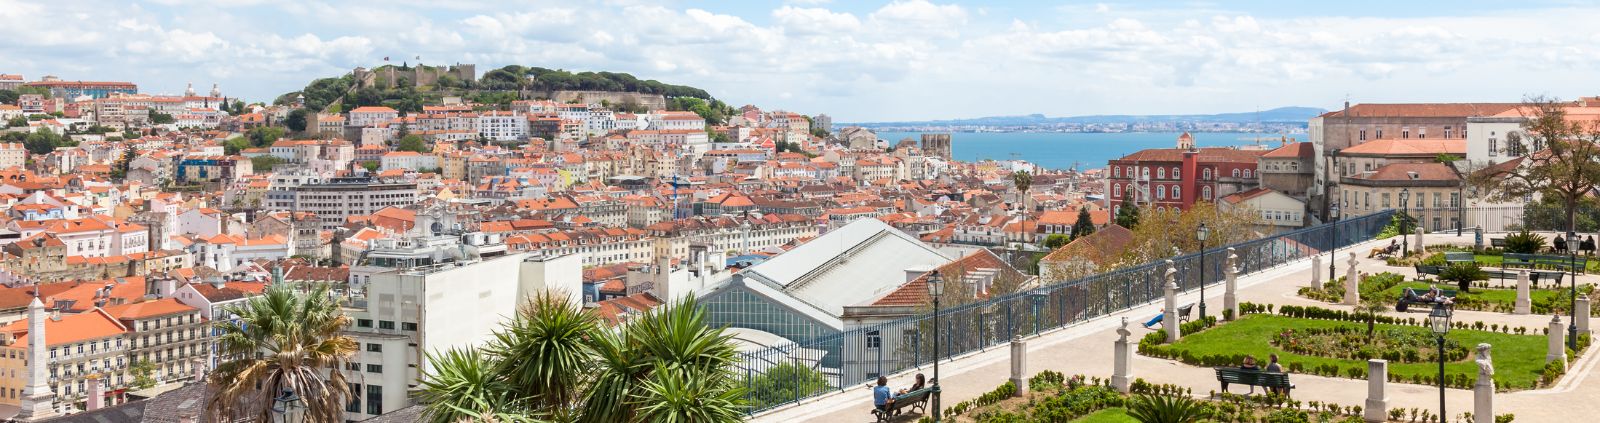 Aussichtspunkt in Lissabon